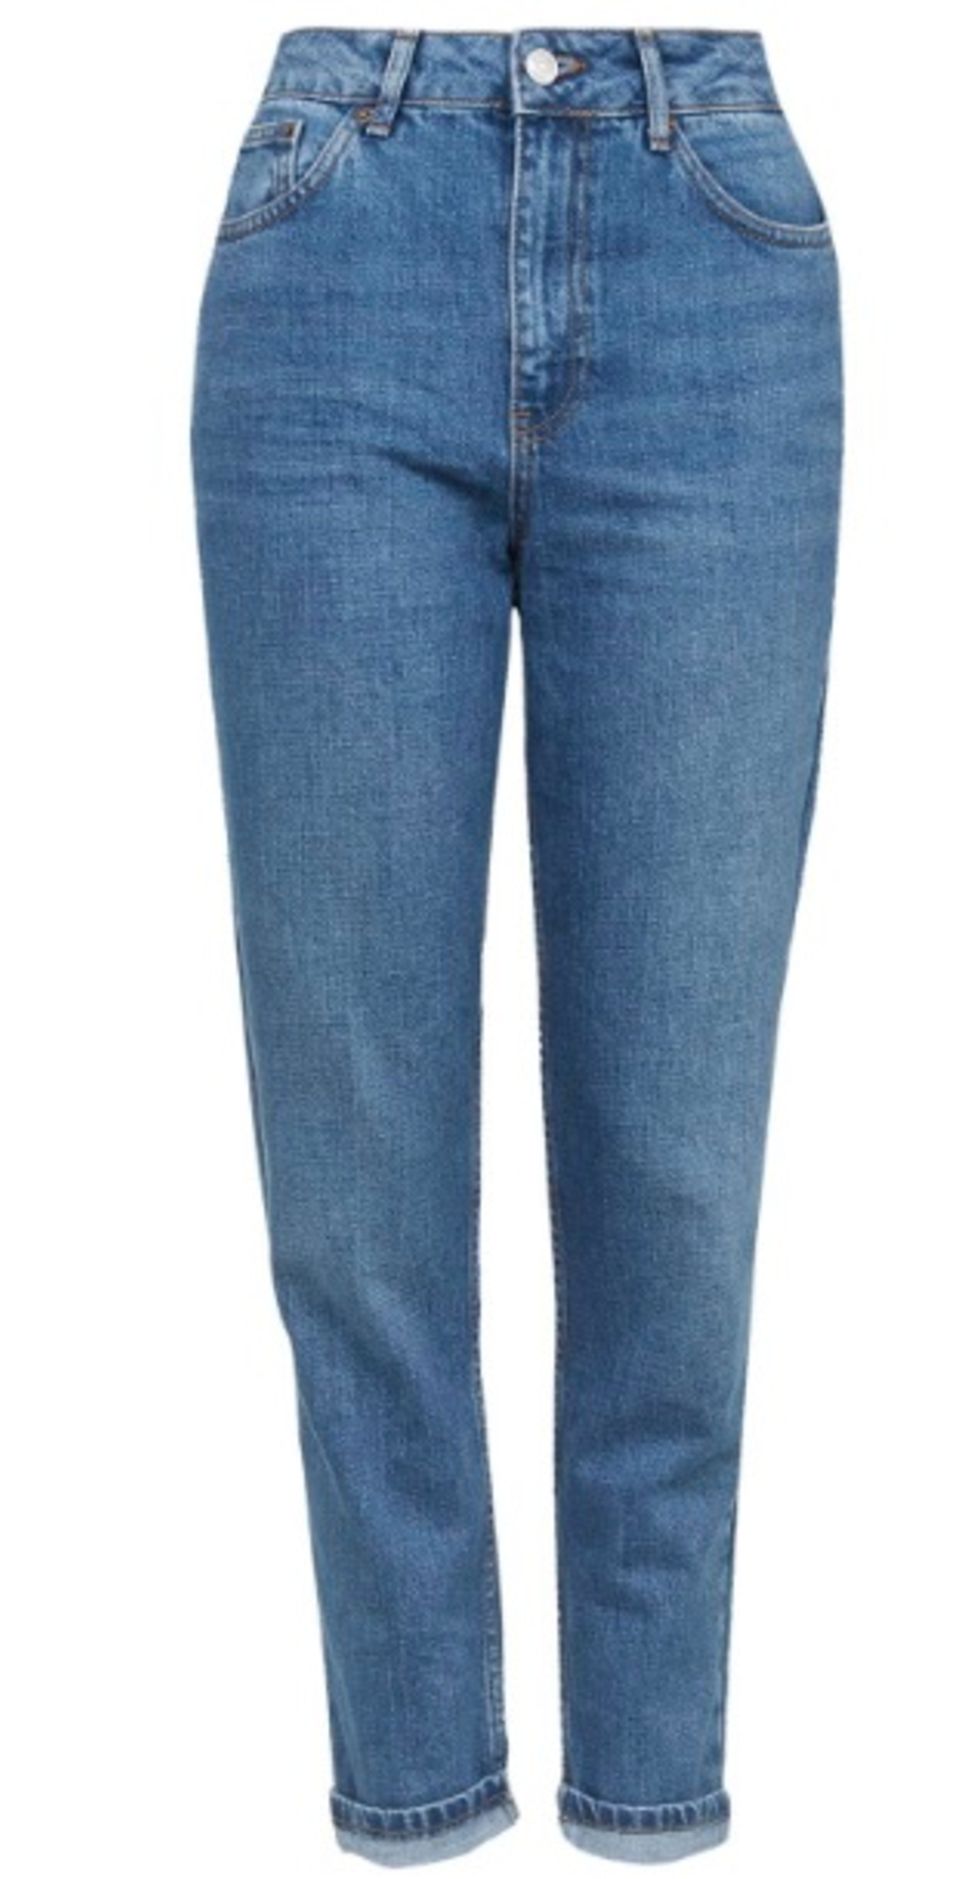 Diese 5 Jeans-Trends solltet ihr jetzt im Schrank haben